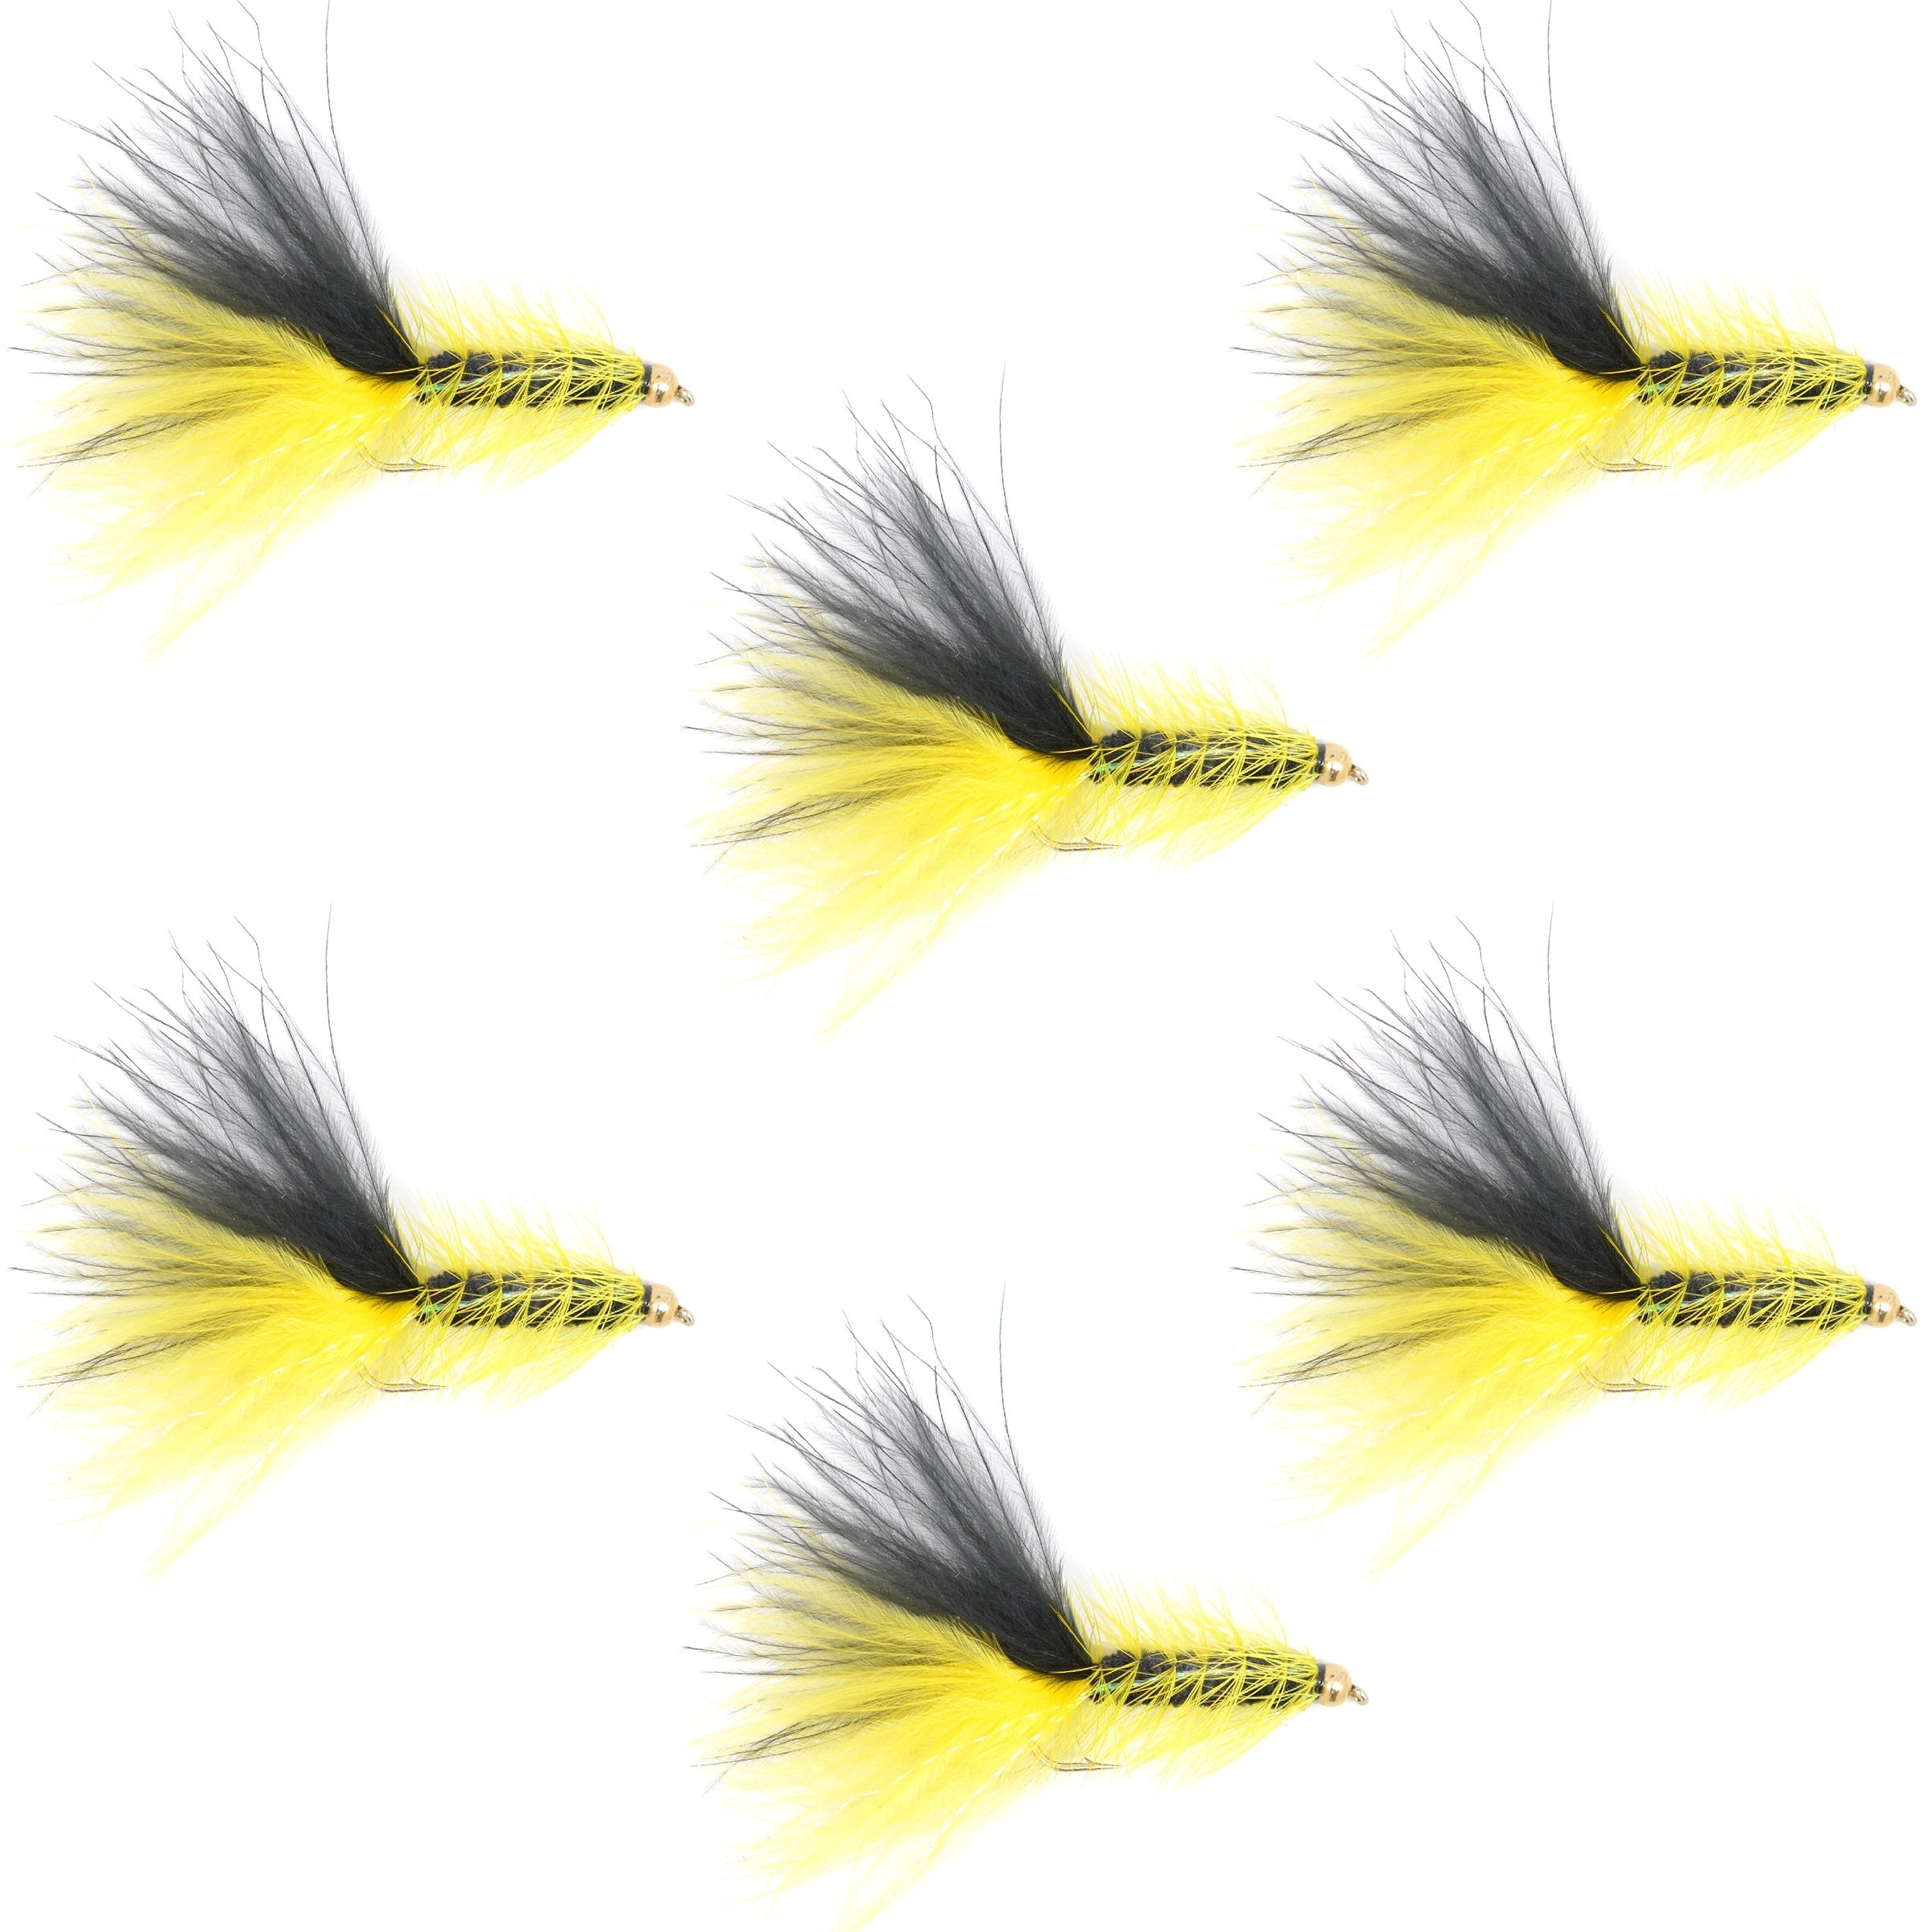 Moscas serpentinas clásicas con cabeza de cuentas de cristal, color amarillo y negro, juego de 6 moscas para pesca con mosca de trucha, tamaño de anzuelo 8